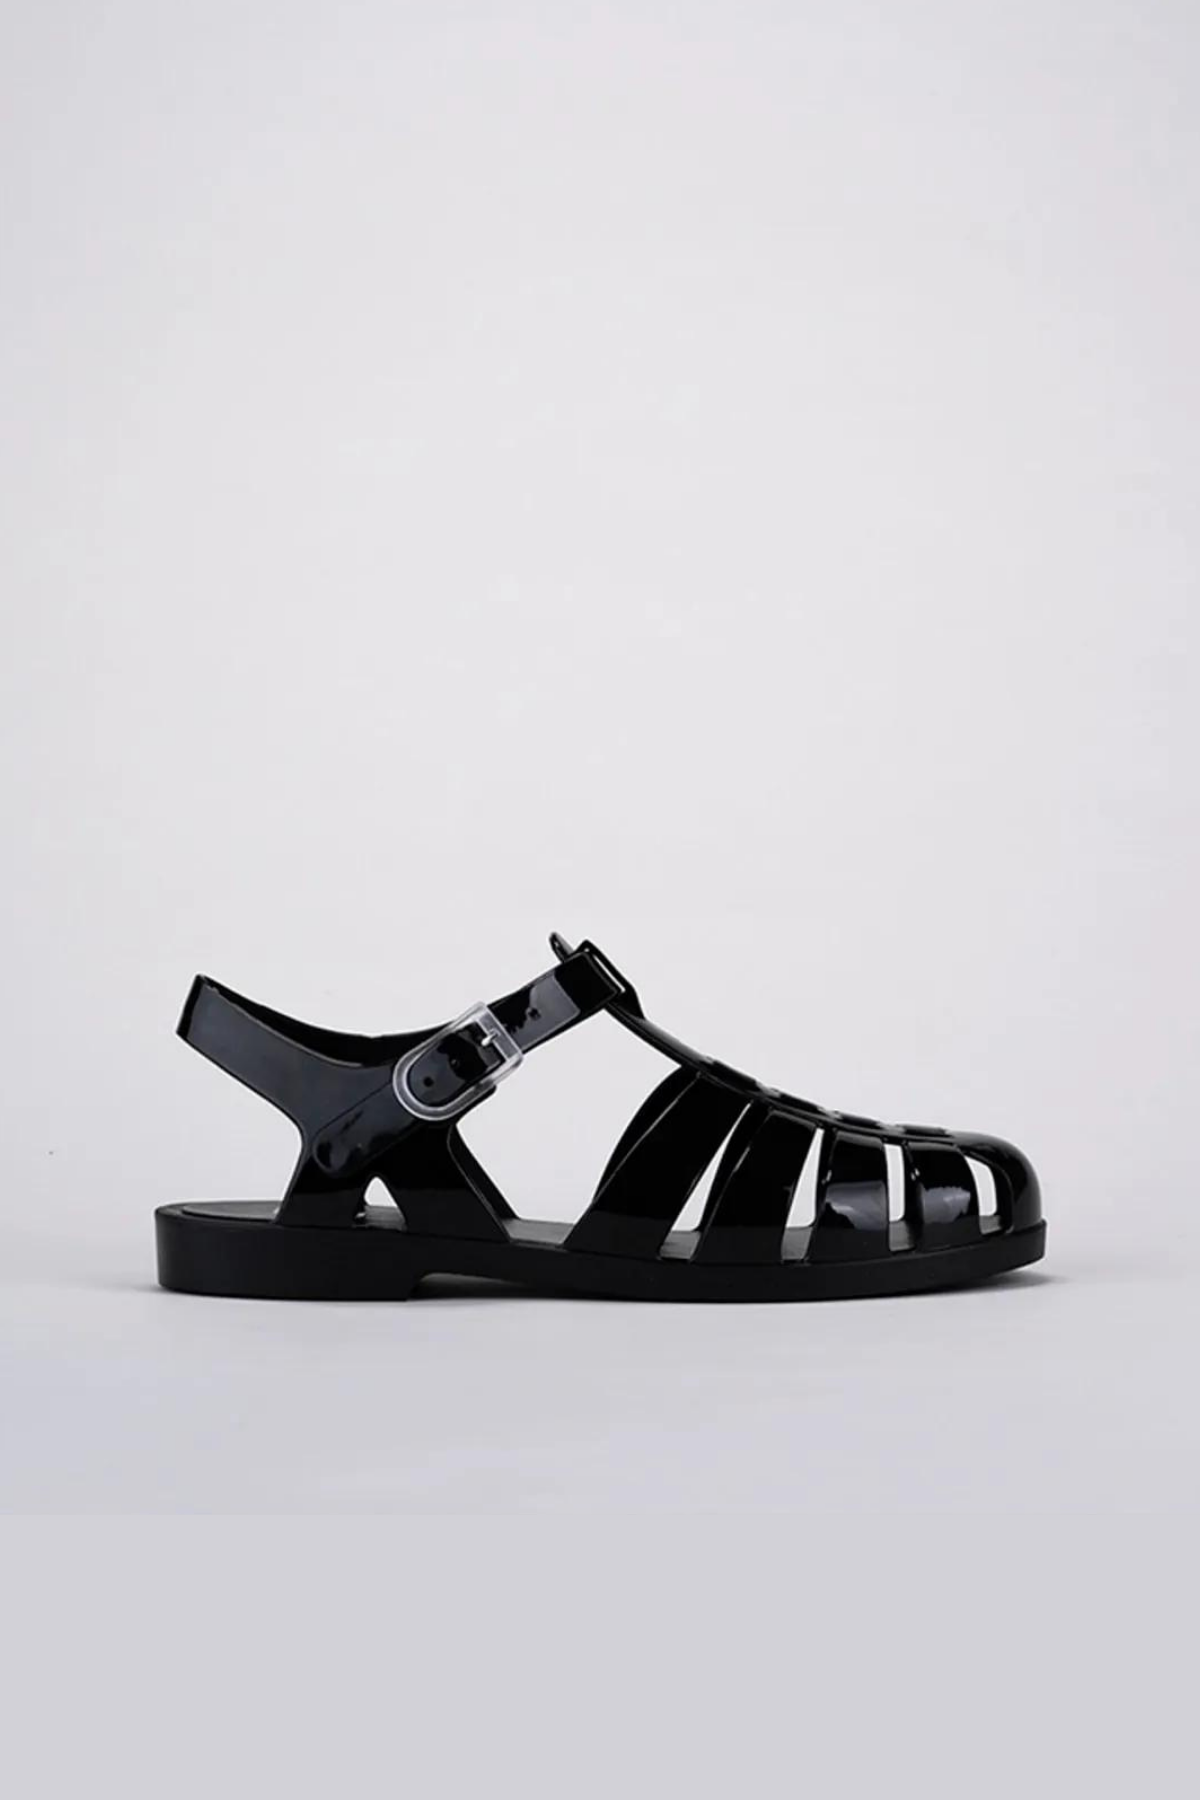 Igor Biarritz Brillo Kadın Siyah Rugan Sandalet S10258-002